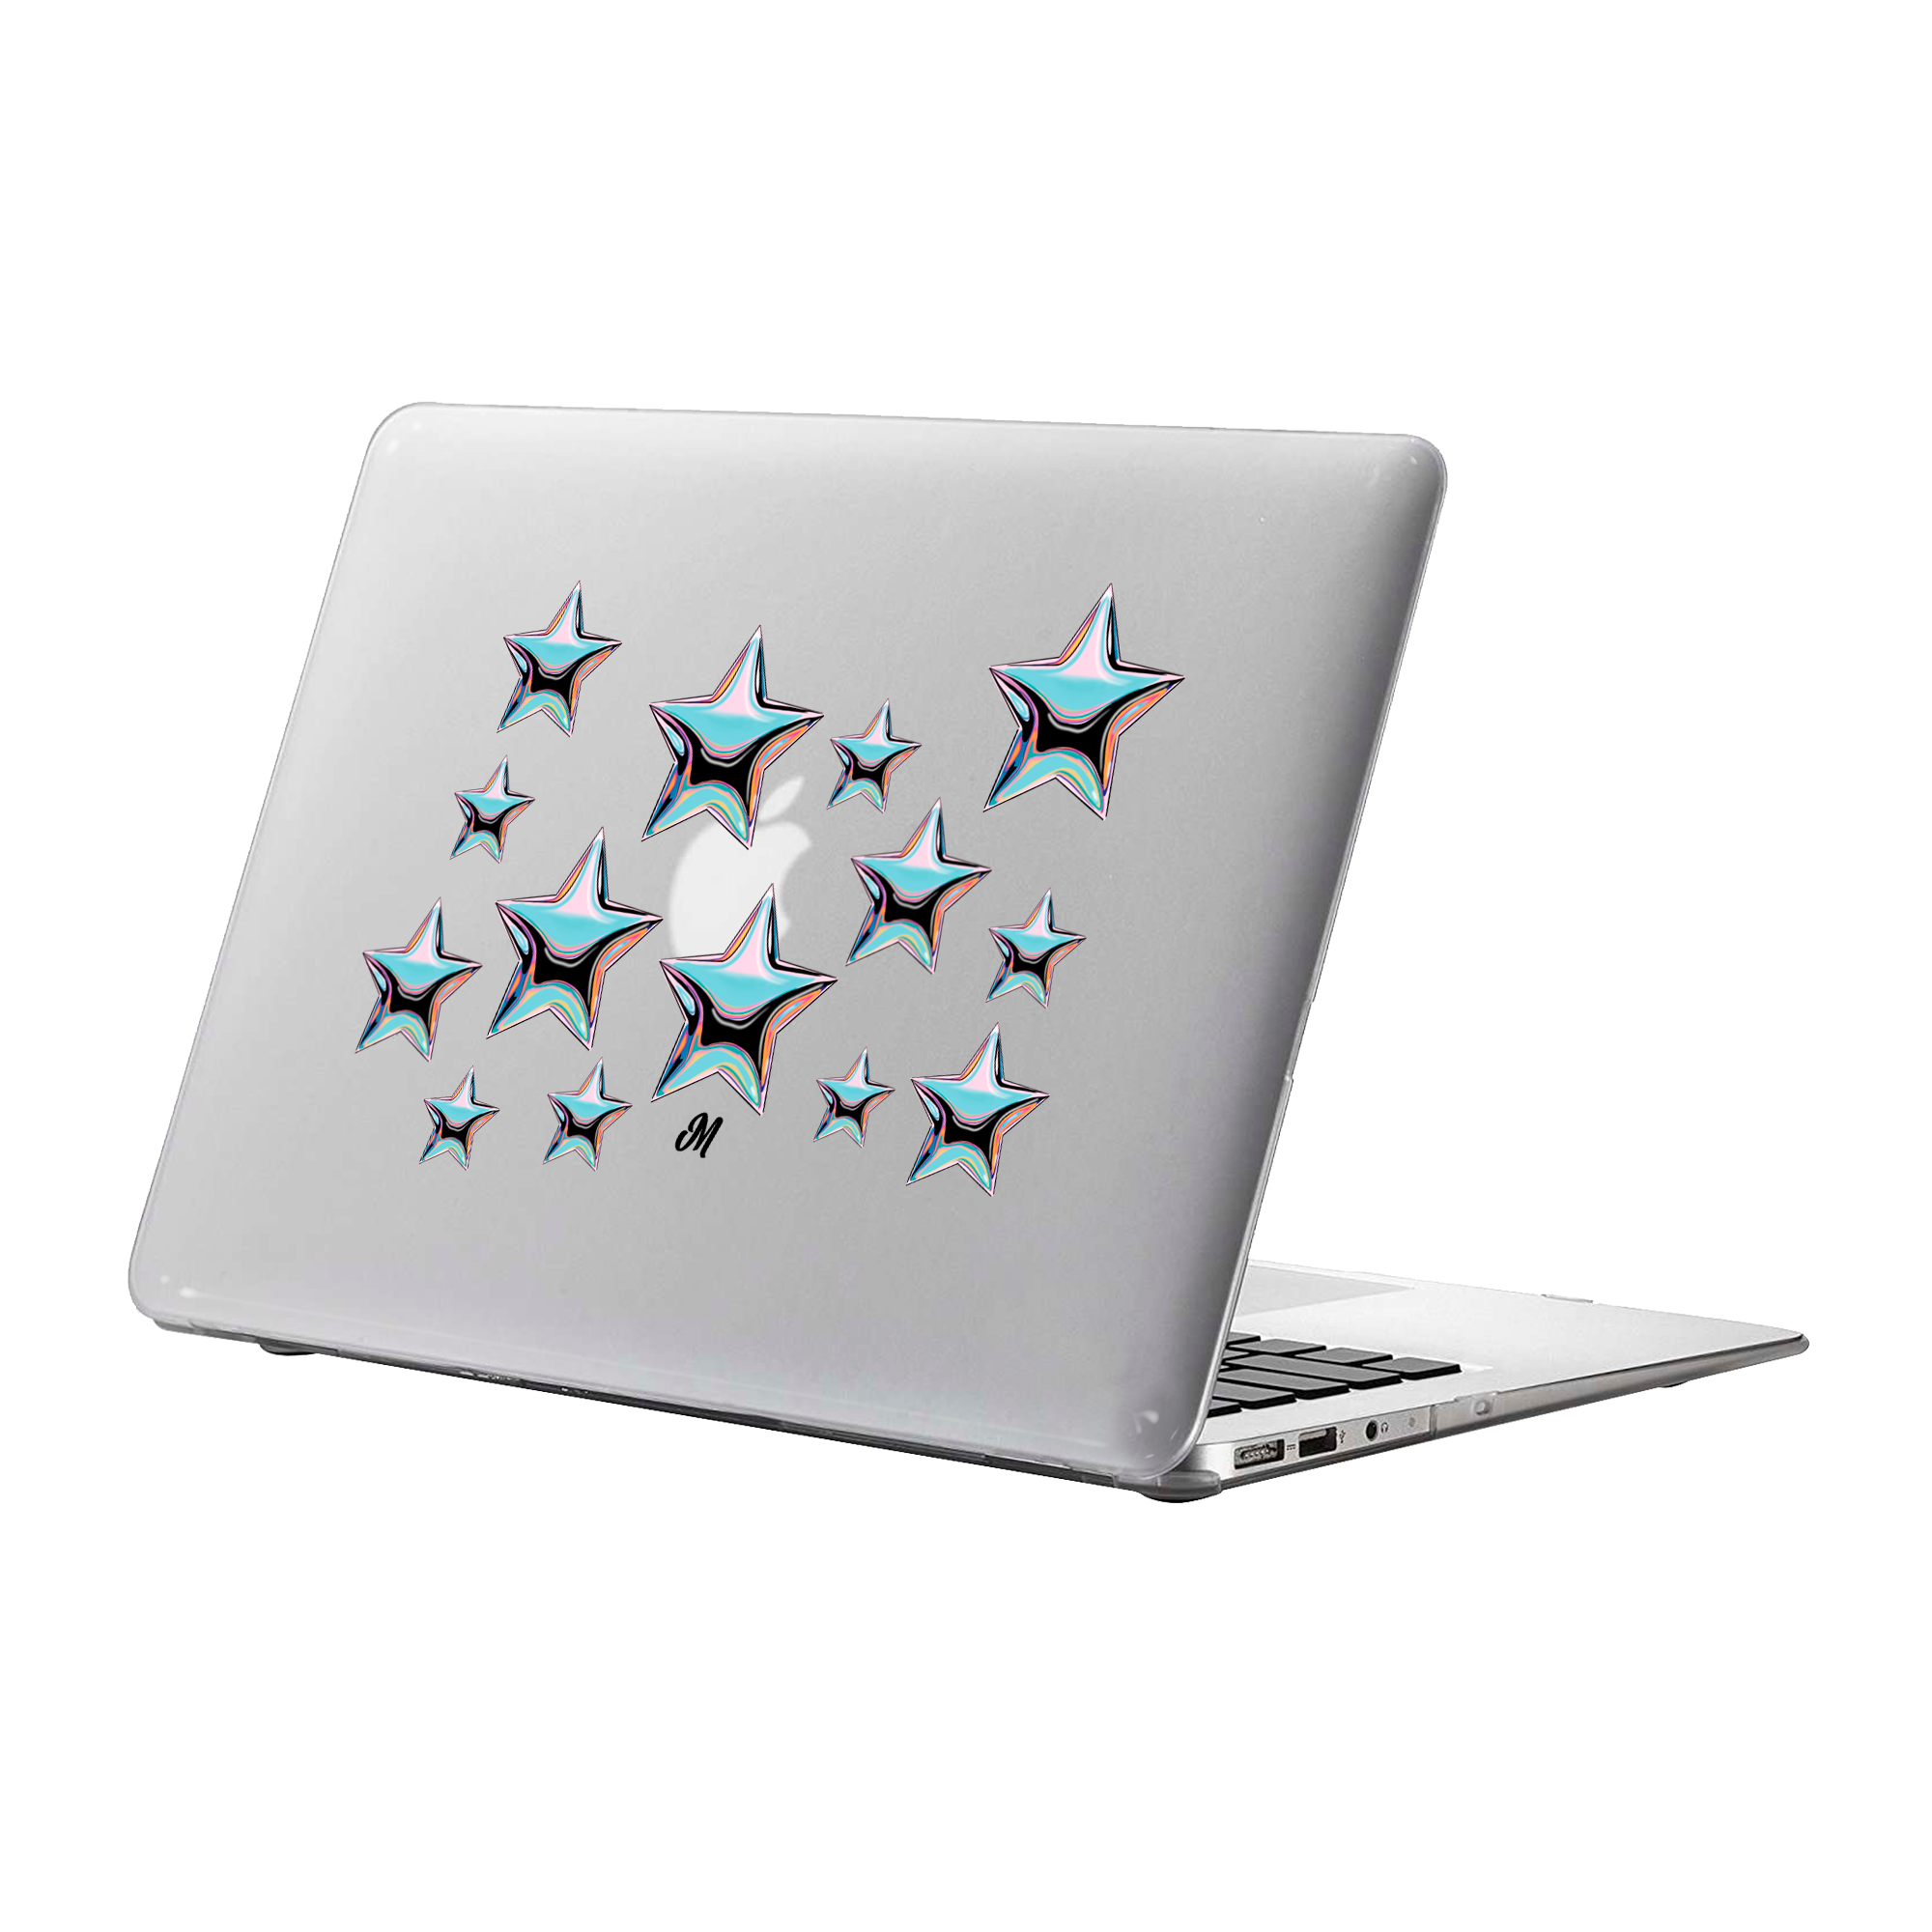 Estrellas Tornasol MacBook Case - Mandala Cases